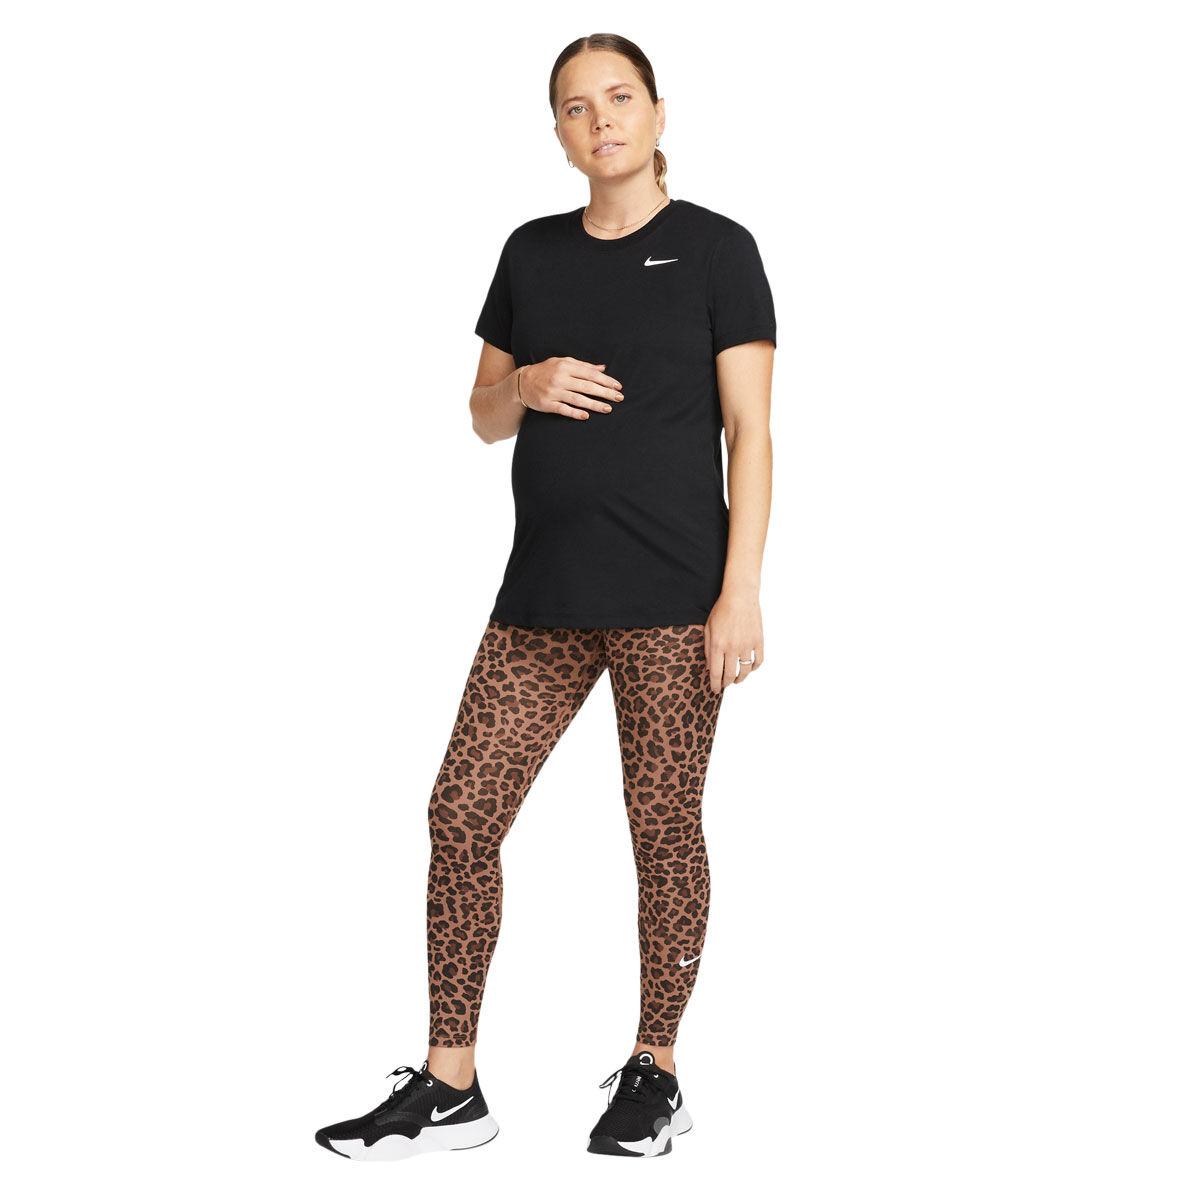 Nike Women's High-Wasted Cheetah Print Leggings